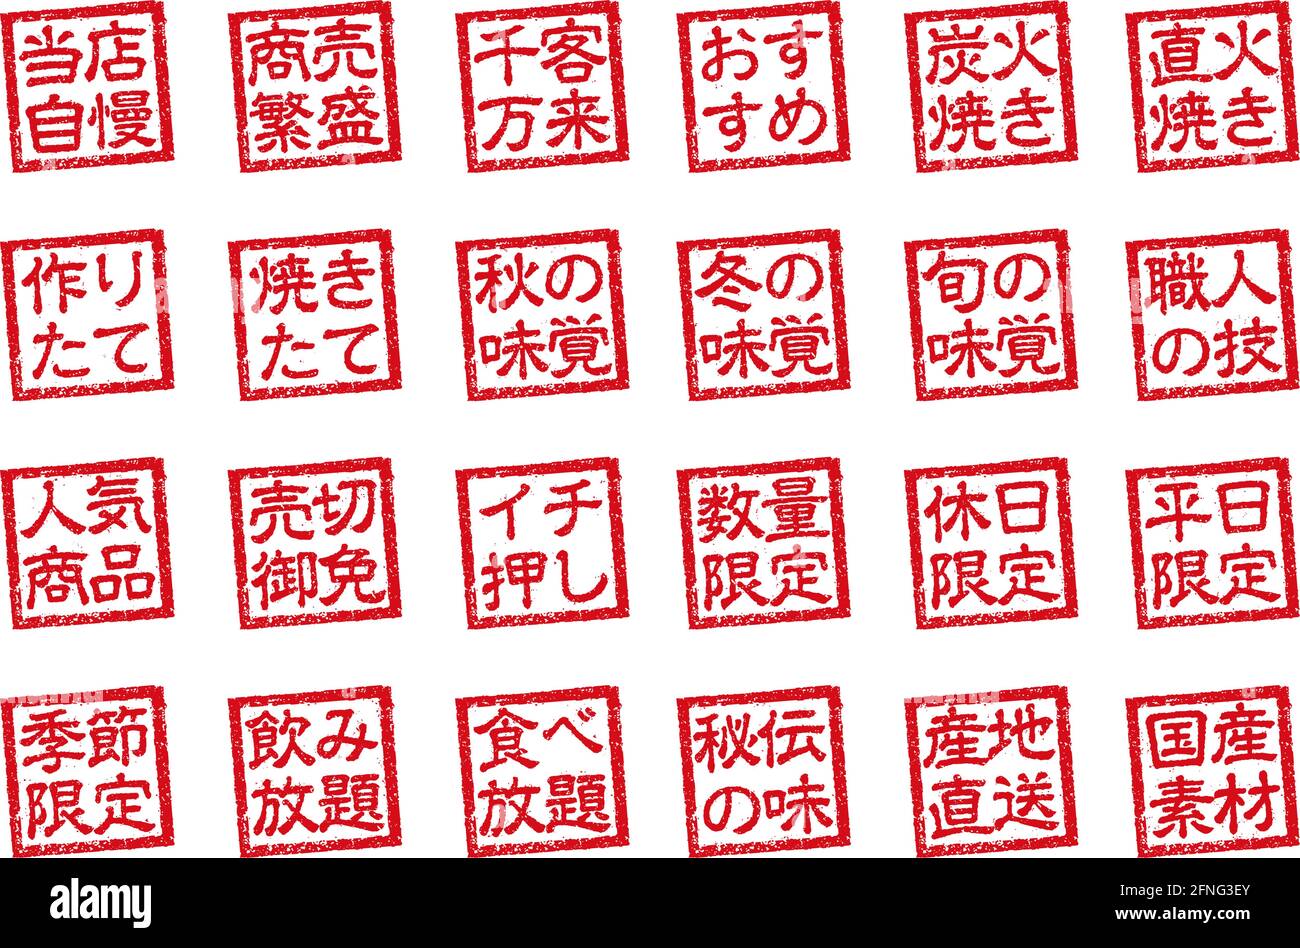 Gummistempel Illustration Set oft in japanischen Restaurants und verwendet Pubs Stock Vektor